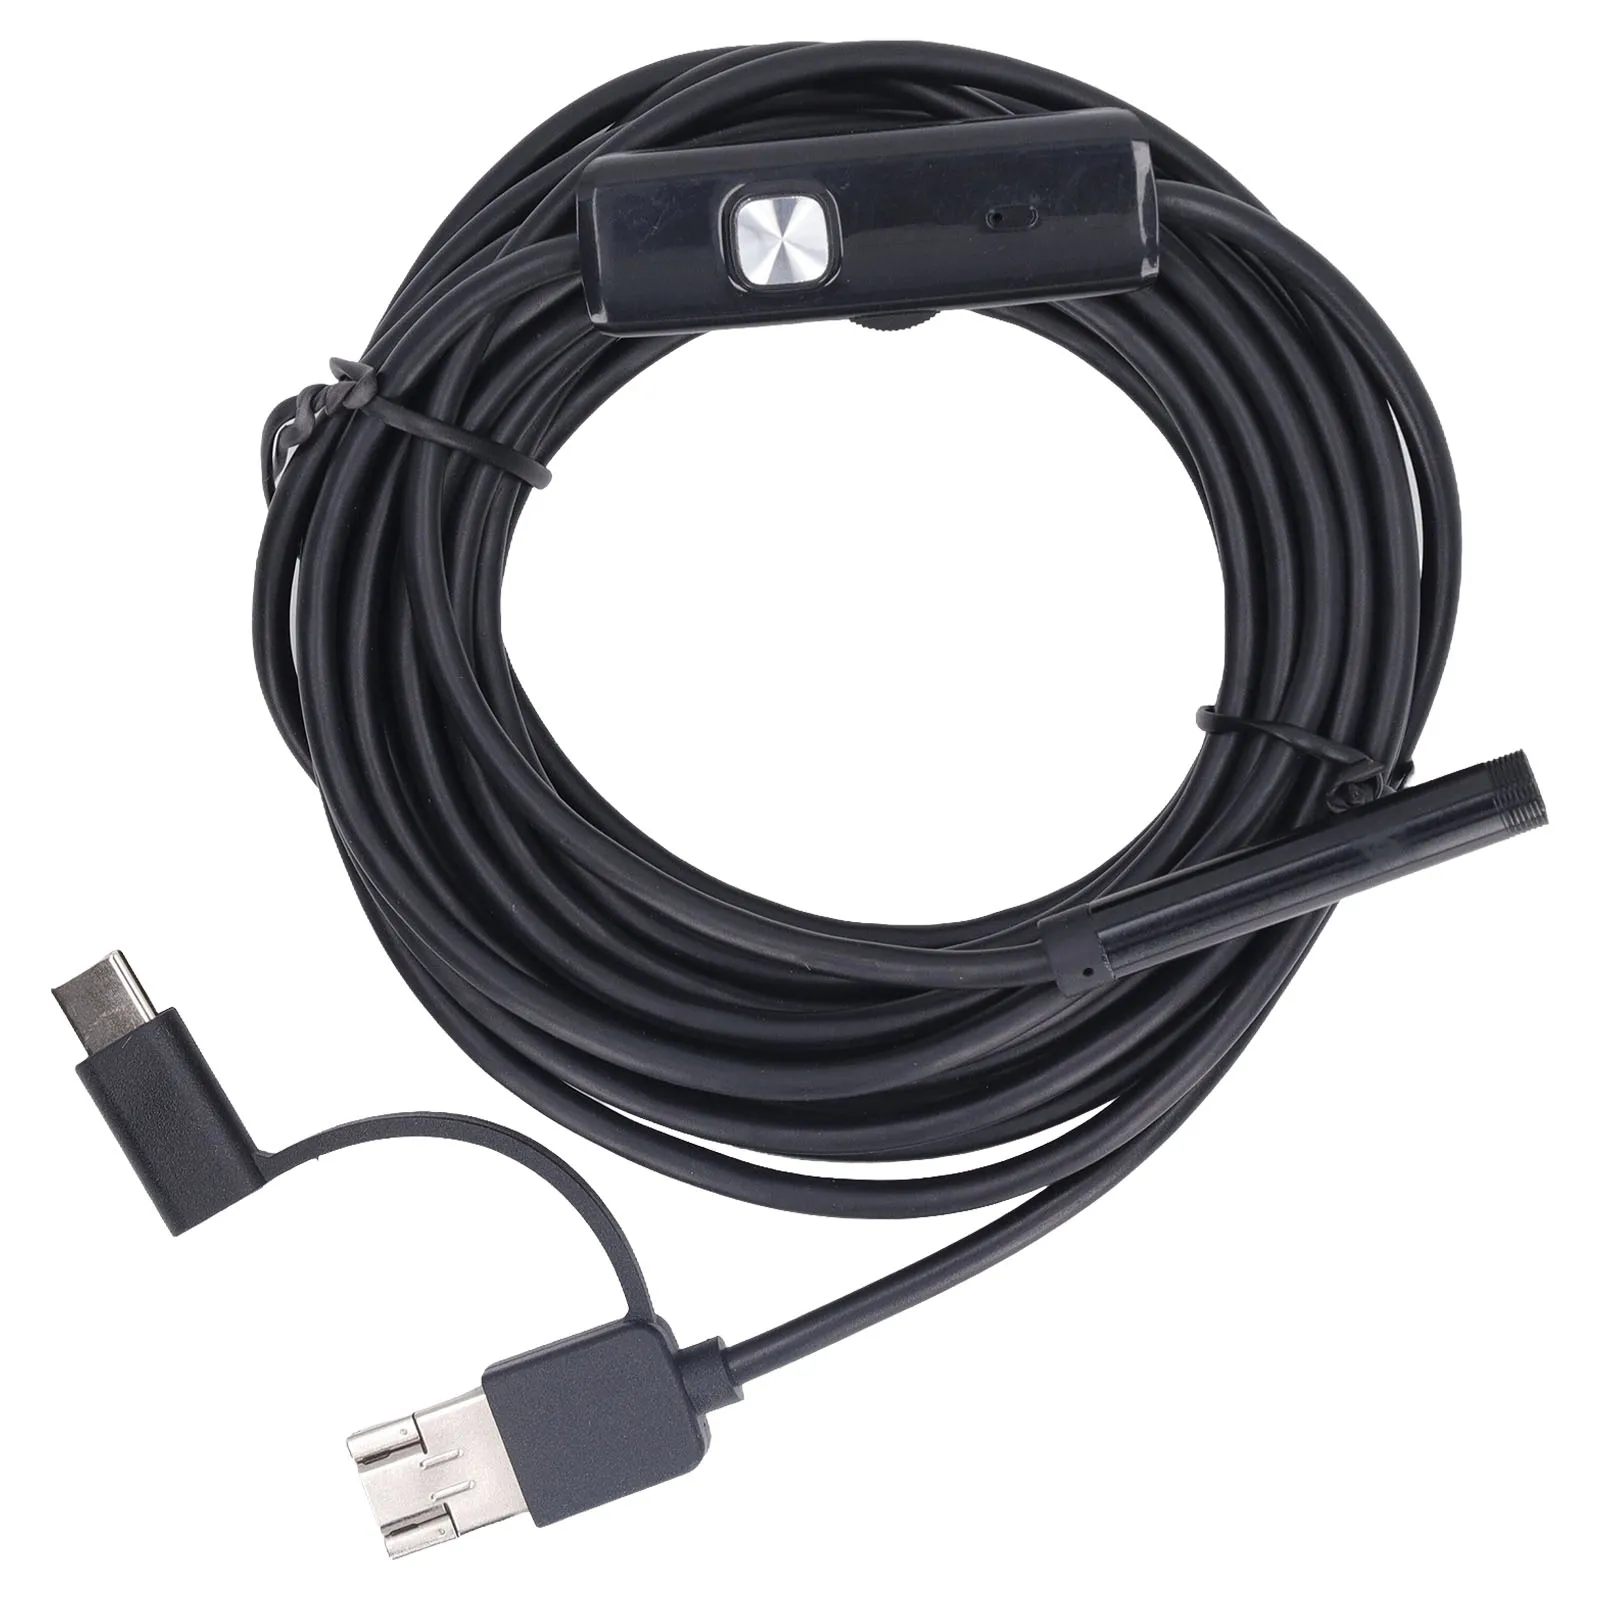 3 em 1 do Tipo C, USB USB Endoscópio 7mm para Carro Impermeável da Inspeção da Tubulação Boroscópio com 6 Luzes LED 5m de Fio Duro